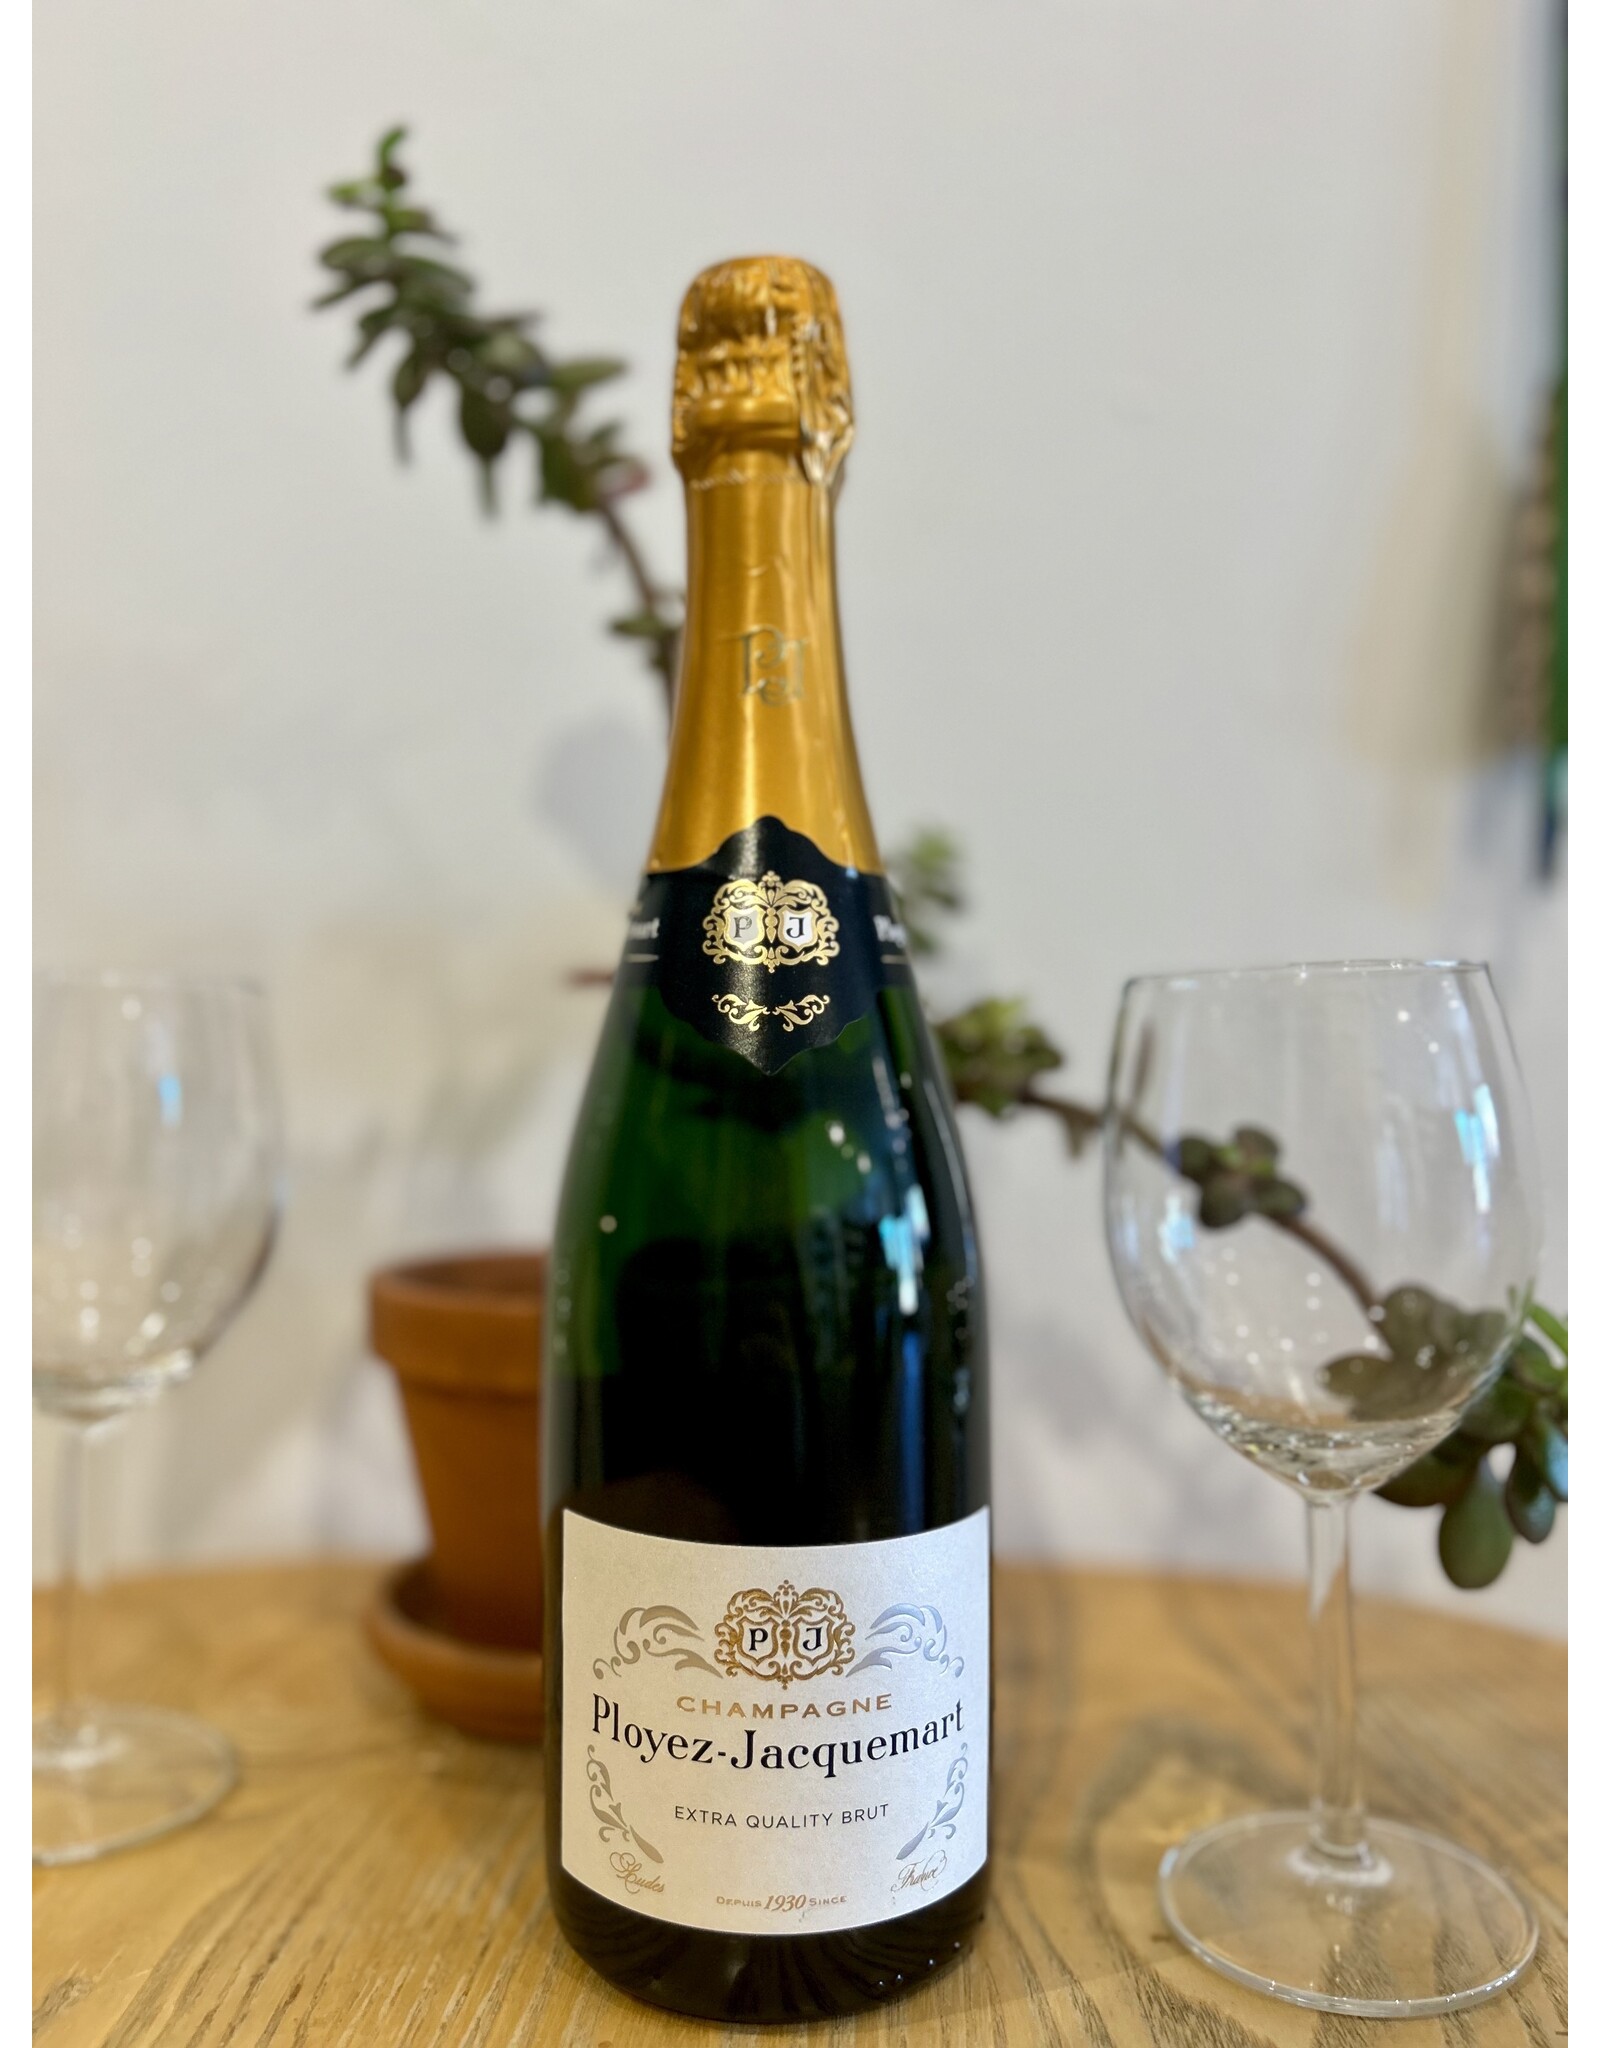 Ployez-Jacquemart Champagne Extra Quality Brut NV